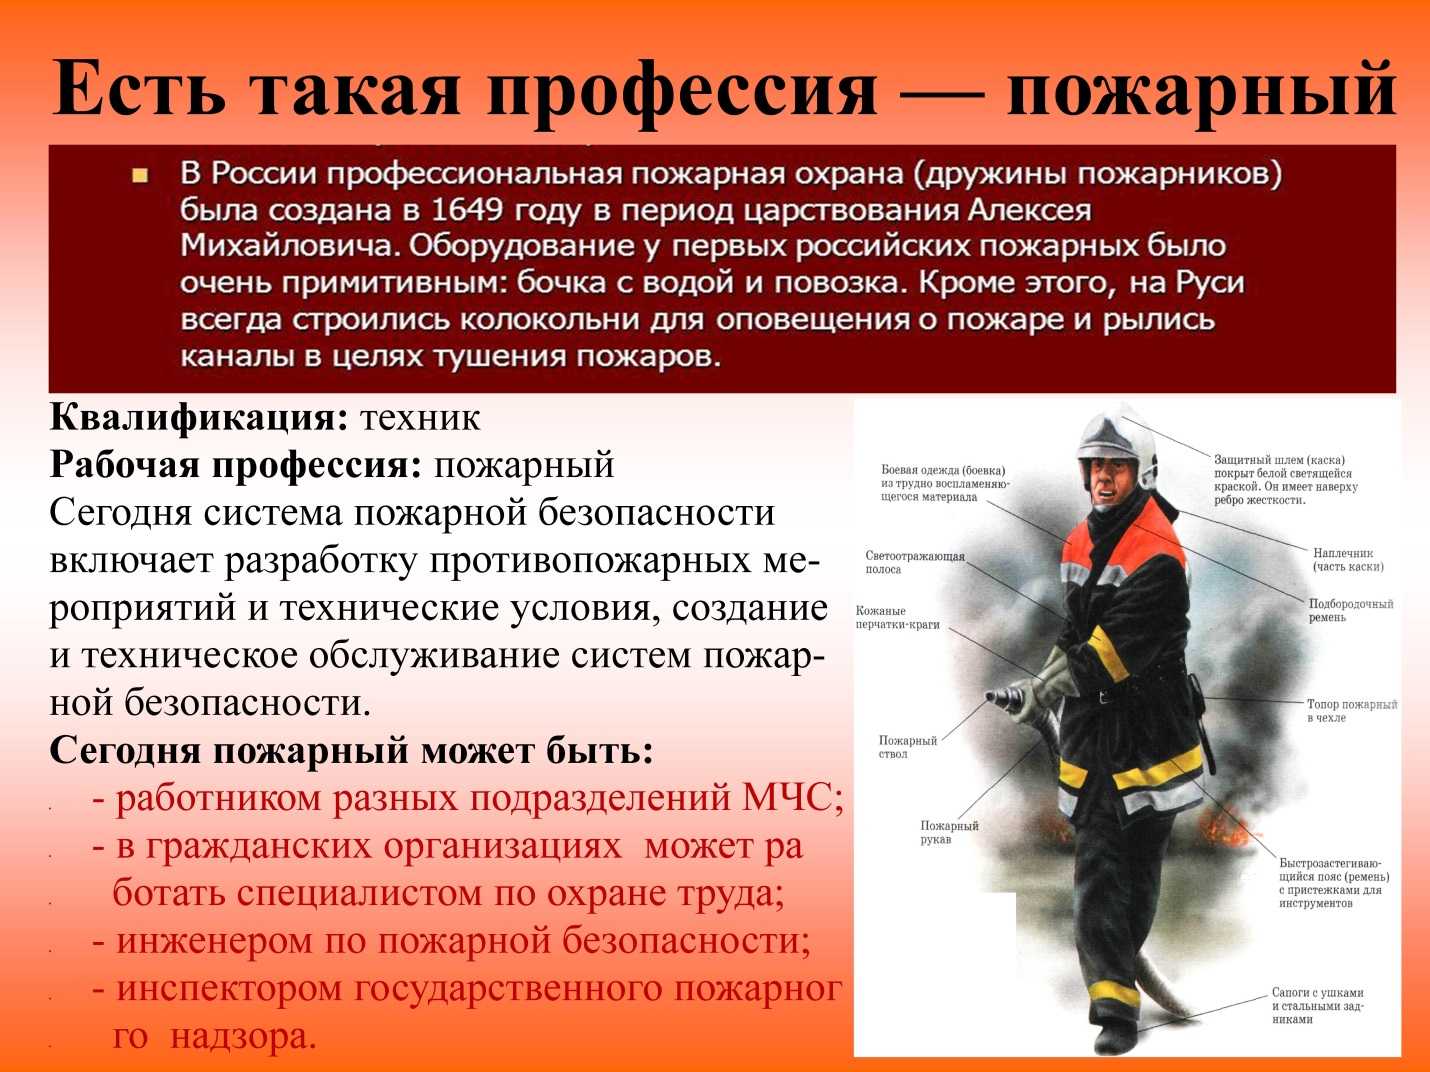 Что относится к функциям пожарной безопасности